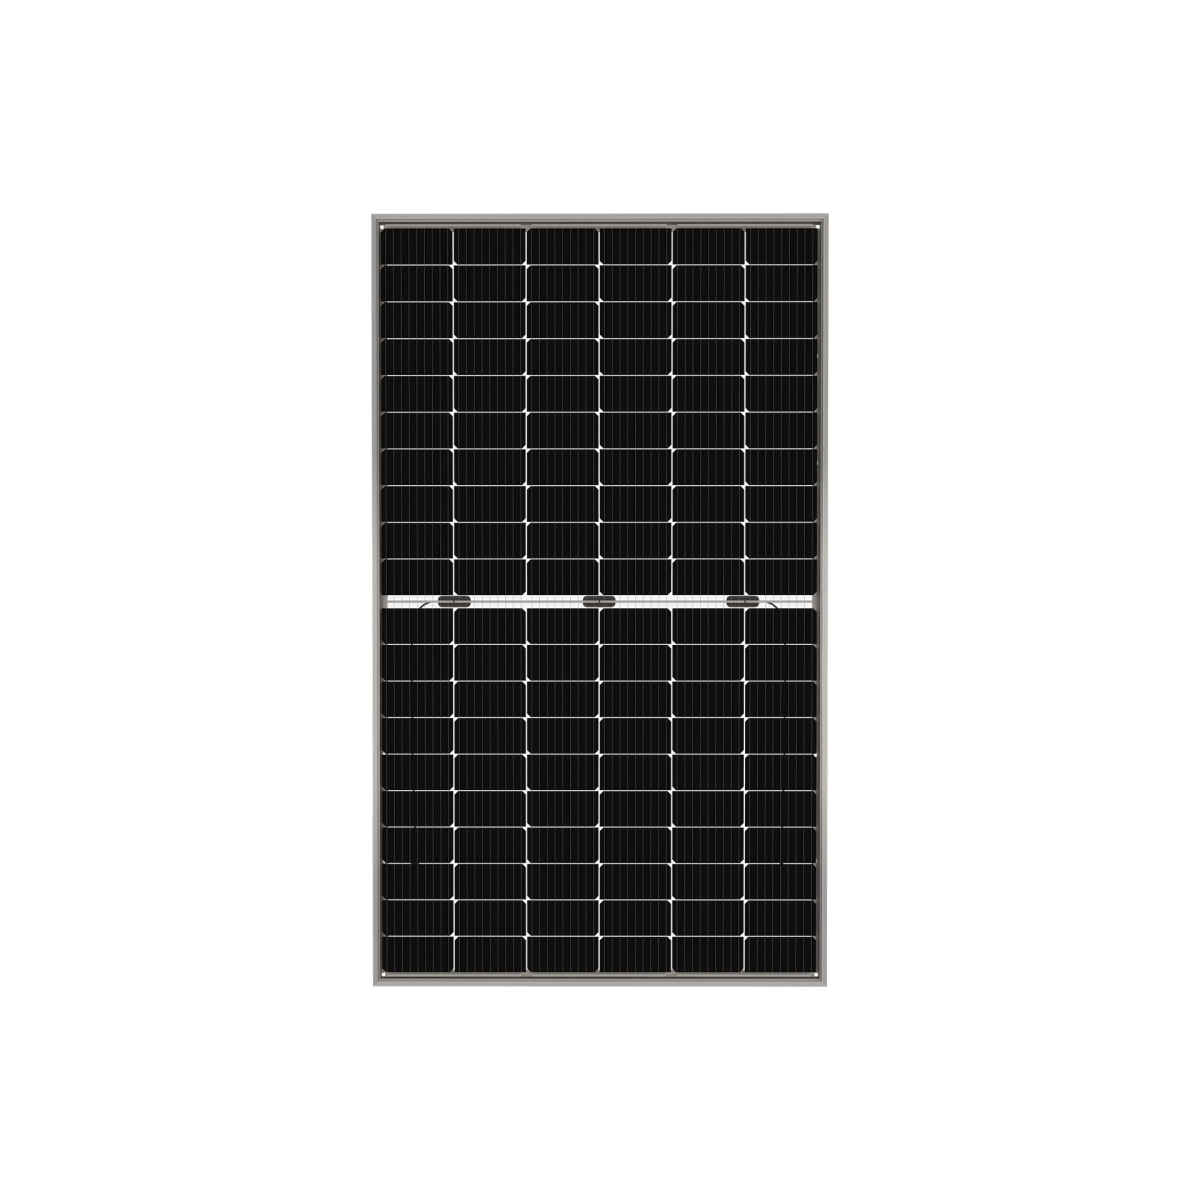 TommaTech 375Wp M6 120PM Cells Bifacial Half-Cut MB Solar Panel